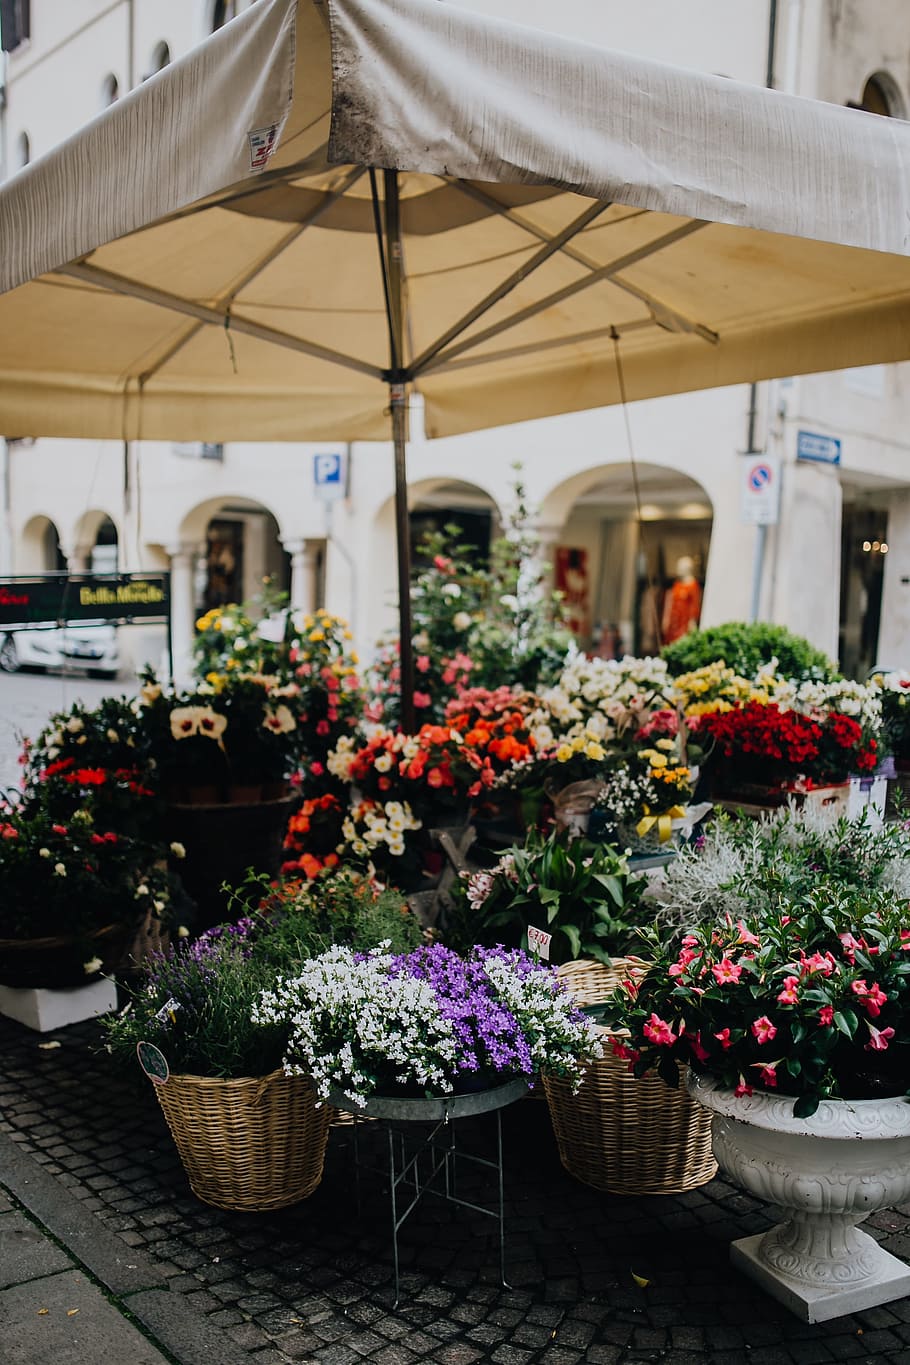 toko bunga, castelfranco veneto, bunga, berbunga, mekar, Italia, pasar, tanaman berbunga, tanaman, untuk dijual